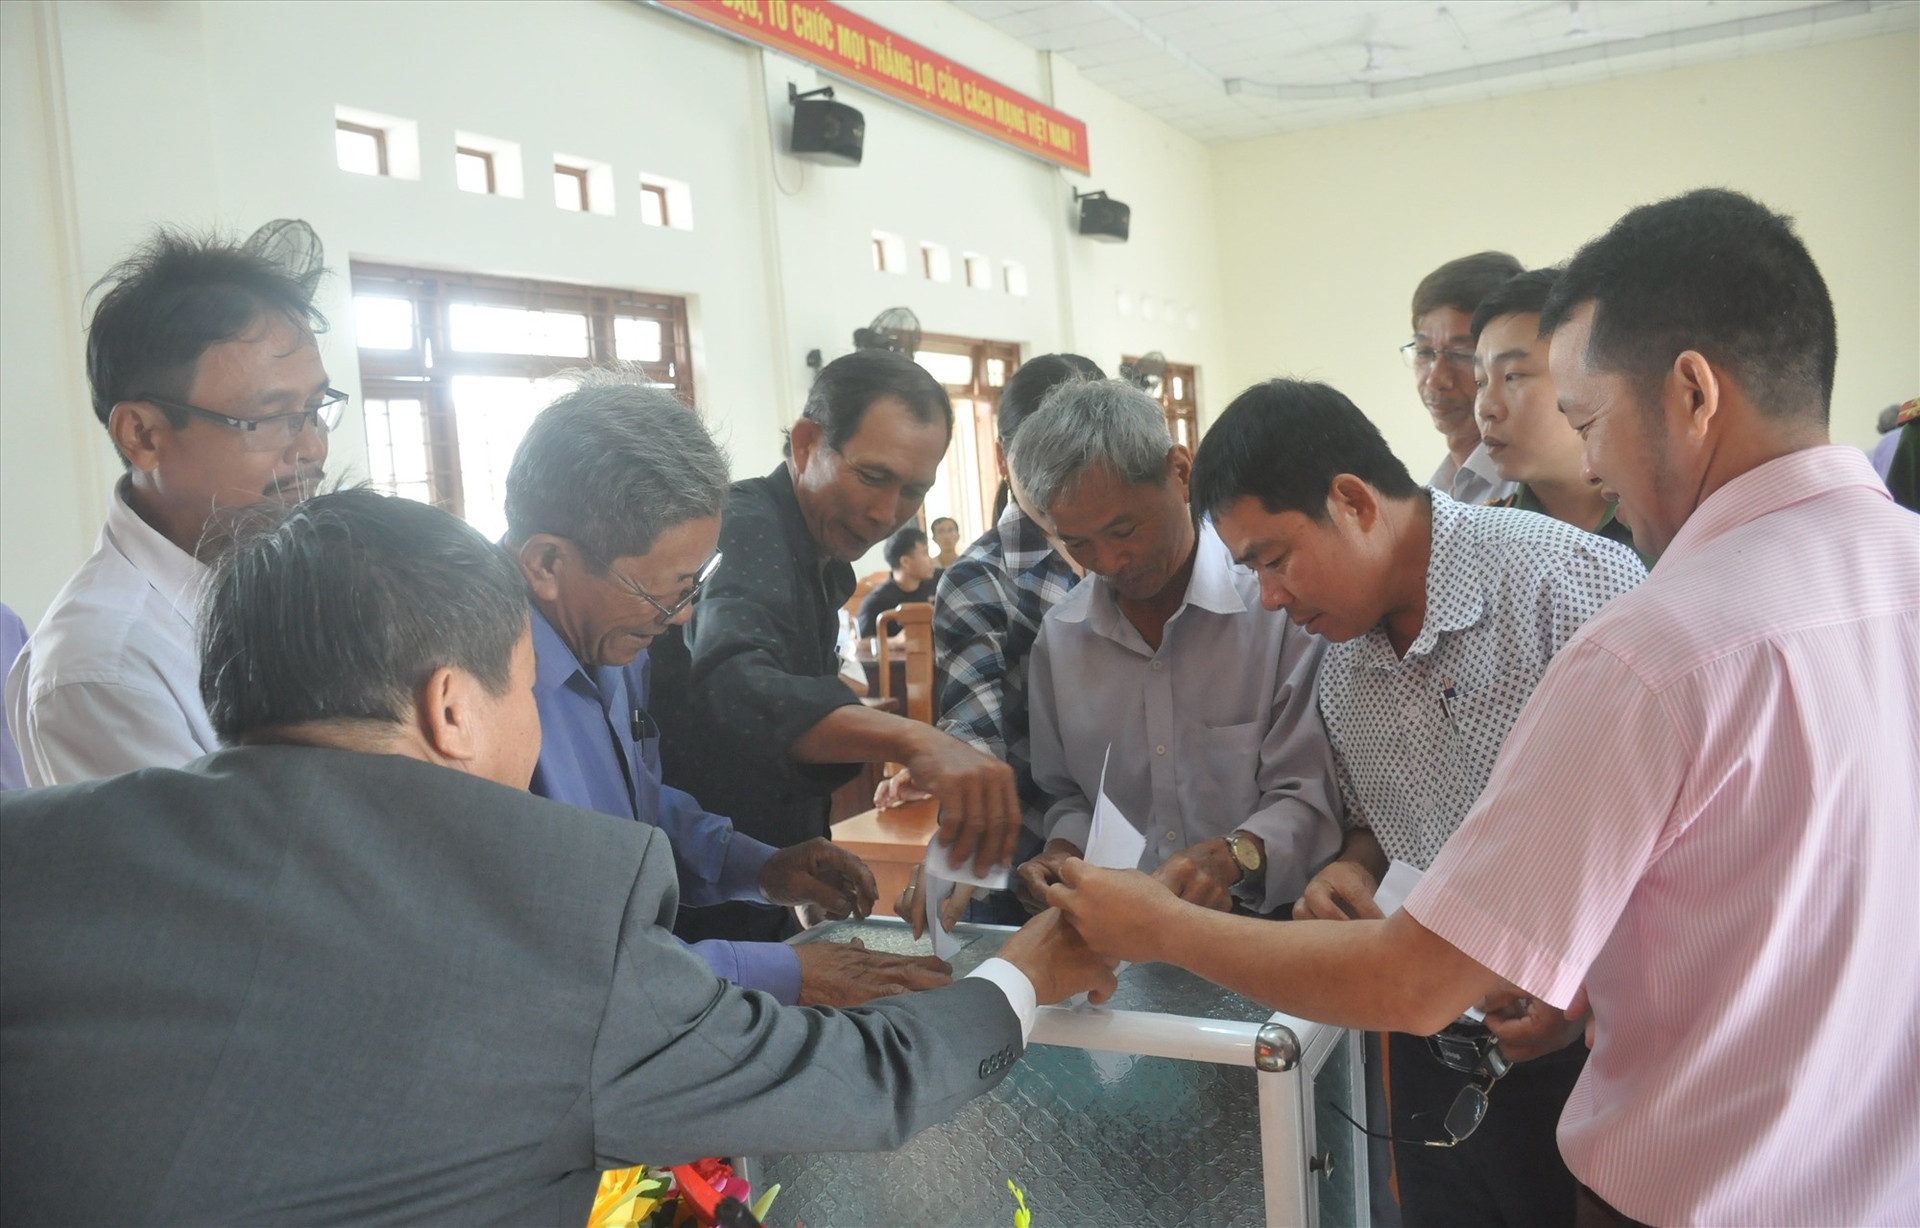 cử tri thôn Bình Quang bỏ phiếu tín nhiệm đối với người ứng cử ĐBQH khóa XV tạo hội nghị sáng nay 29.3. Ảnh: N.Đ